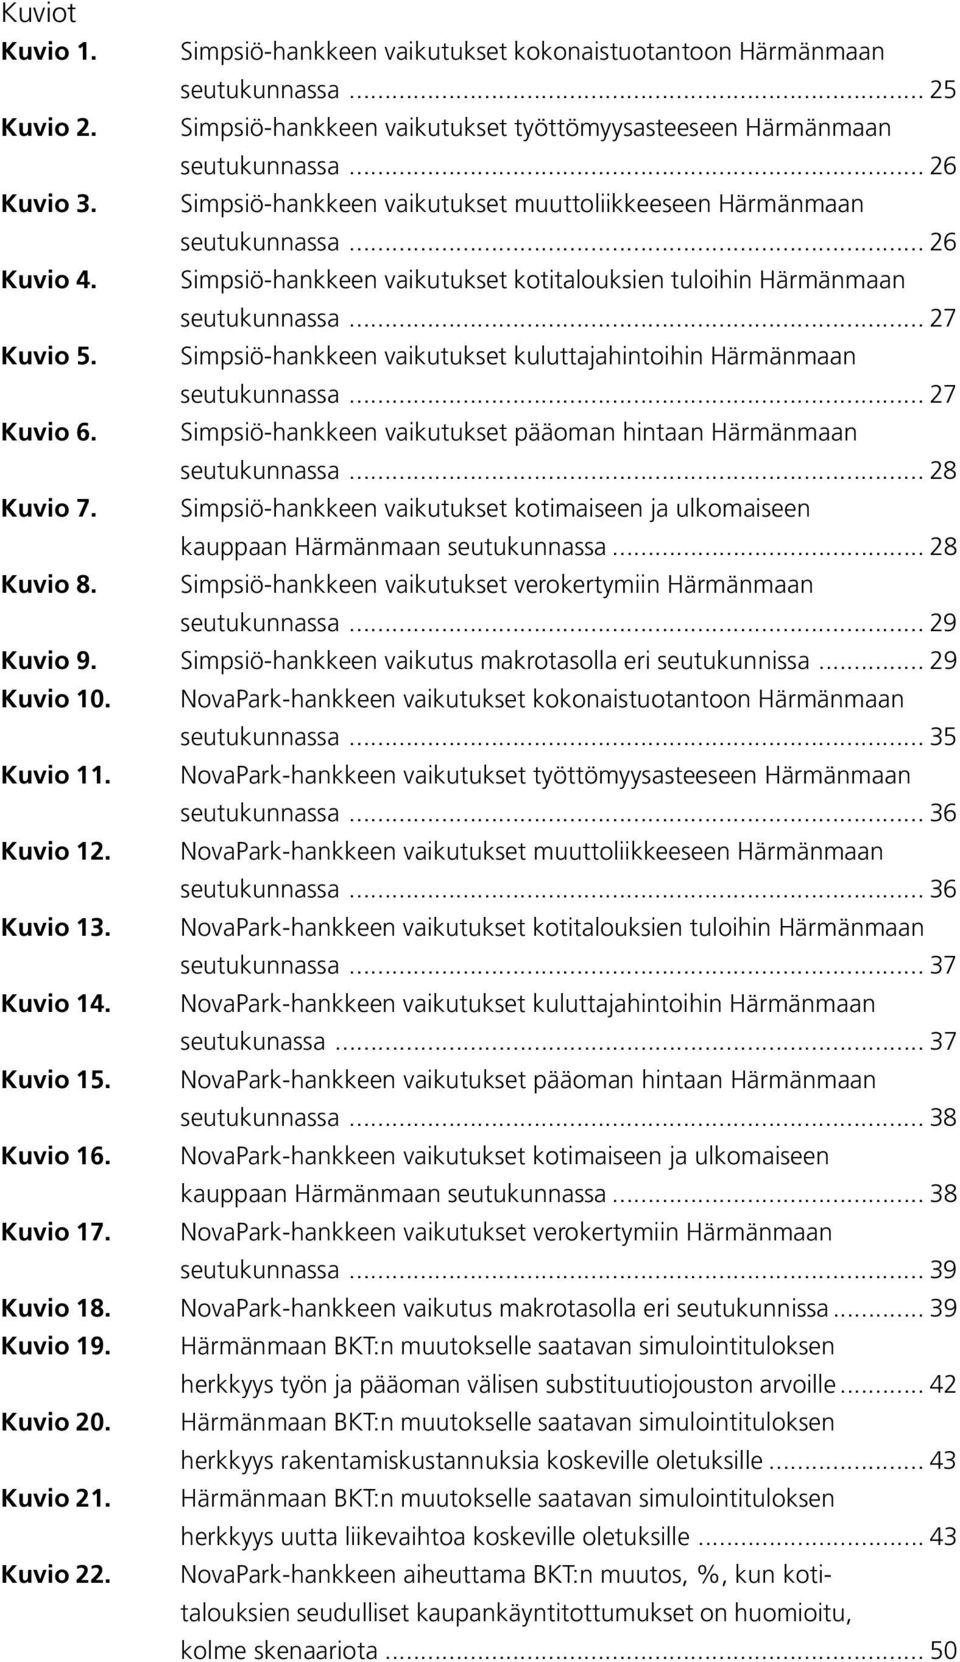 Simpsiö-hankkeen vaikutukset kuluttajahintoihin Härmänmaan seutukunnassa... 27 Kuvio 6. Simpsiö-hankkeen vaikutukset pääoman hintaan Härmänmaan seutukunnassa... 28 Kuvio 7.